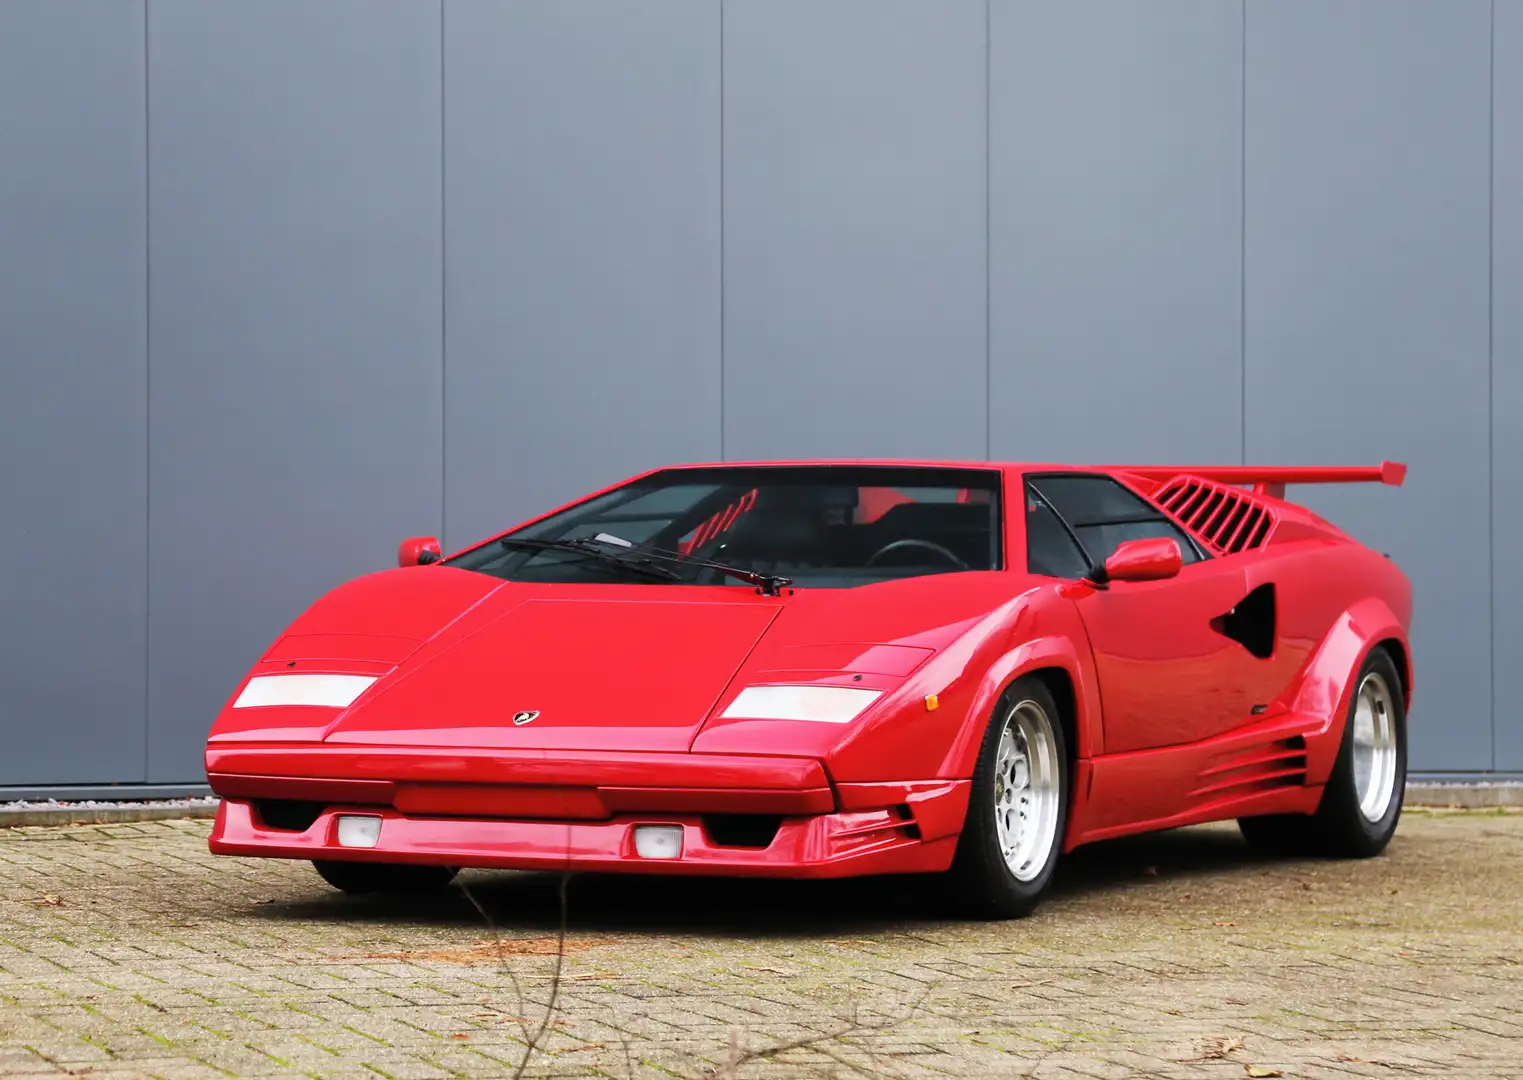 Lamborghini Countach 25th Anniversary - 4960 km - 2 owner Red - 1